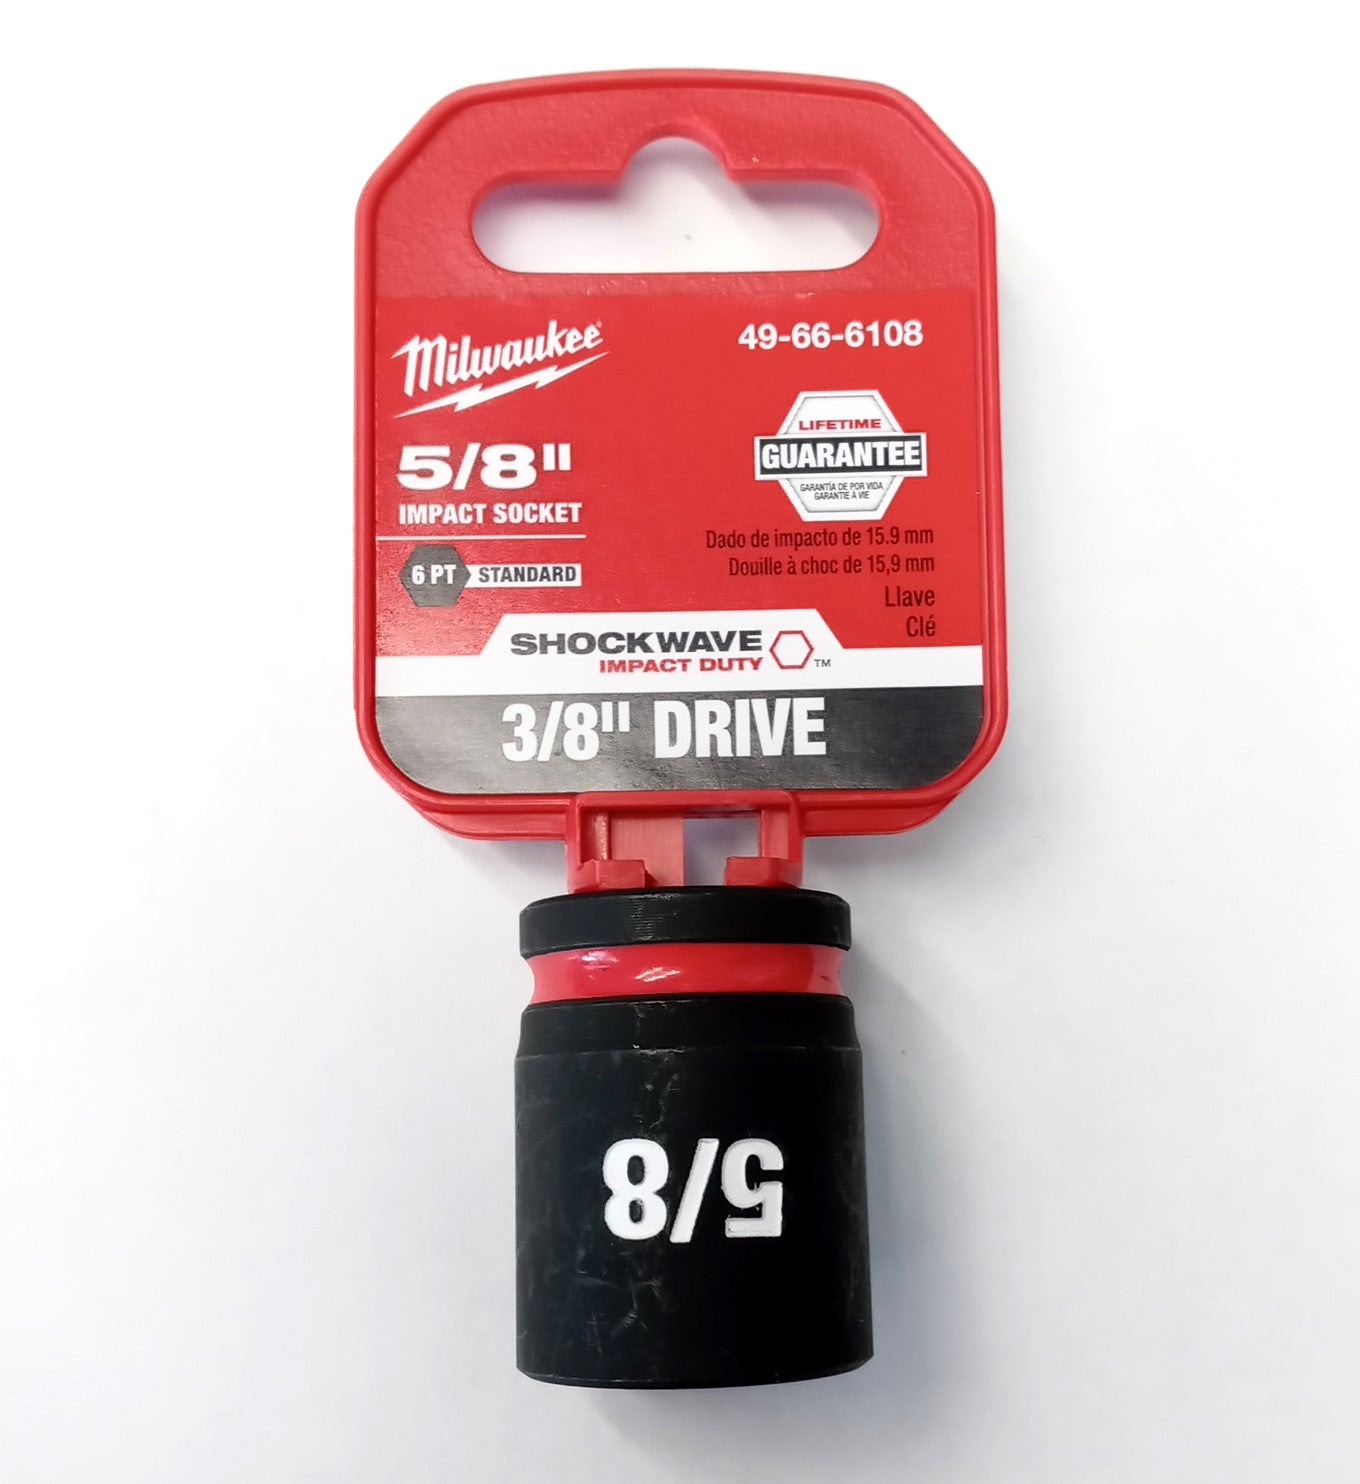 Milwaukee Tool 49-66-6108 3/8" Drive 5/8" Standard Impact Socket 6pt.